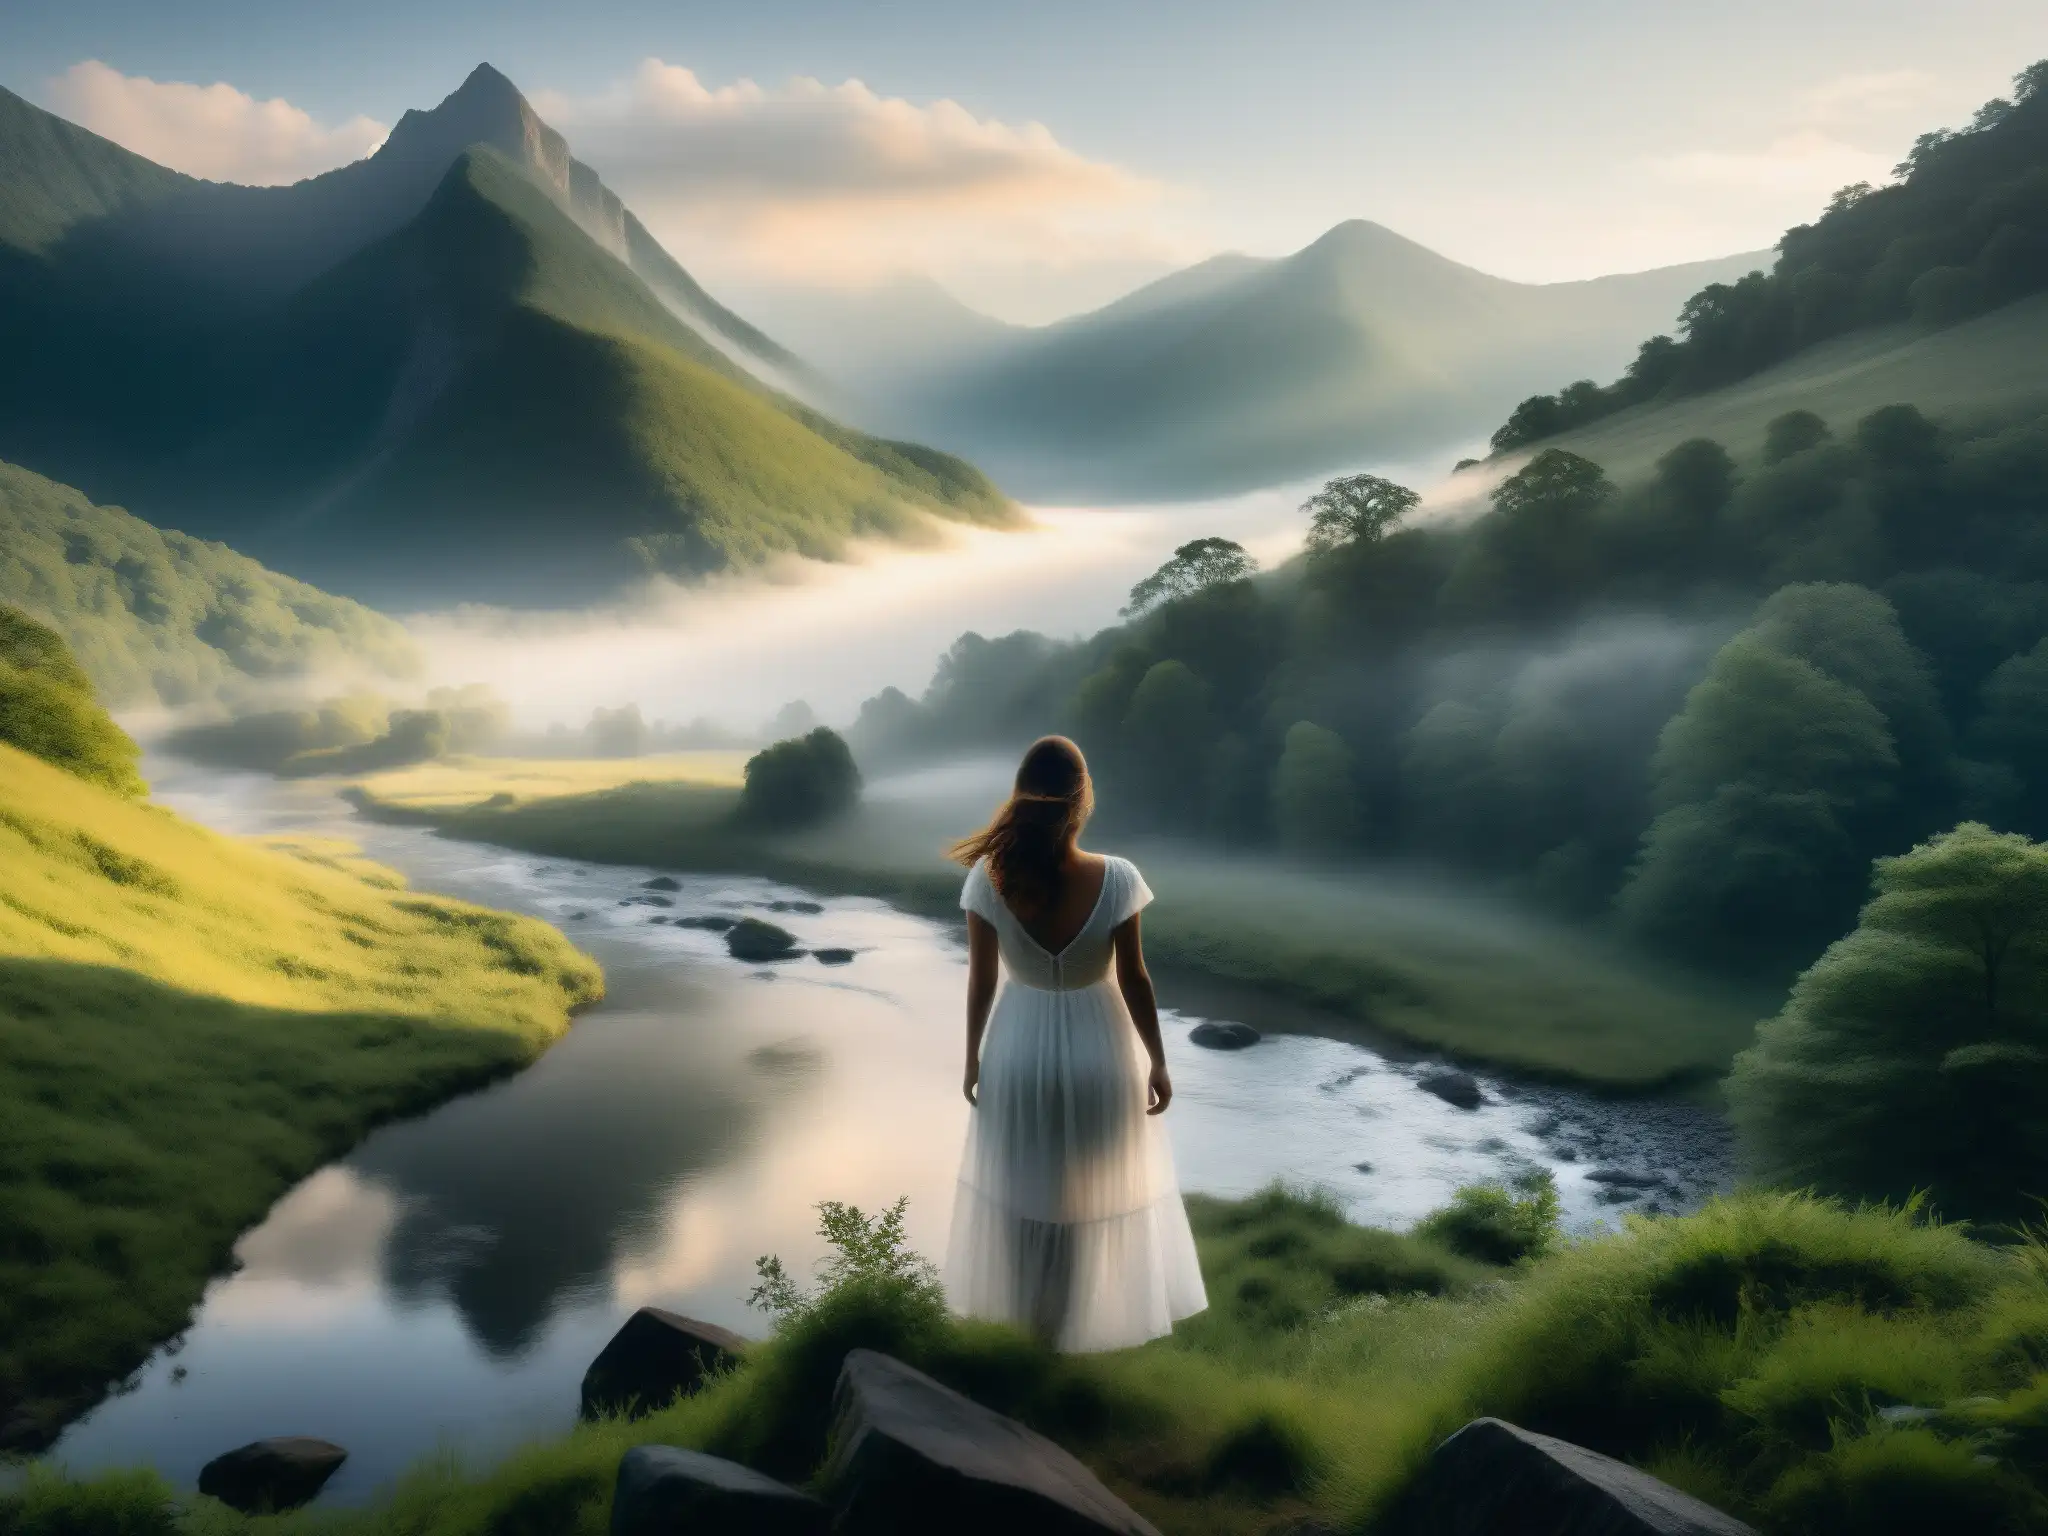 Una misteriosa leyenda de la mujer blanca en Appalachia, con una figura etérea junto al río entre montañas neblinosas